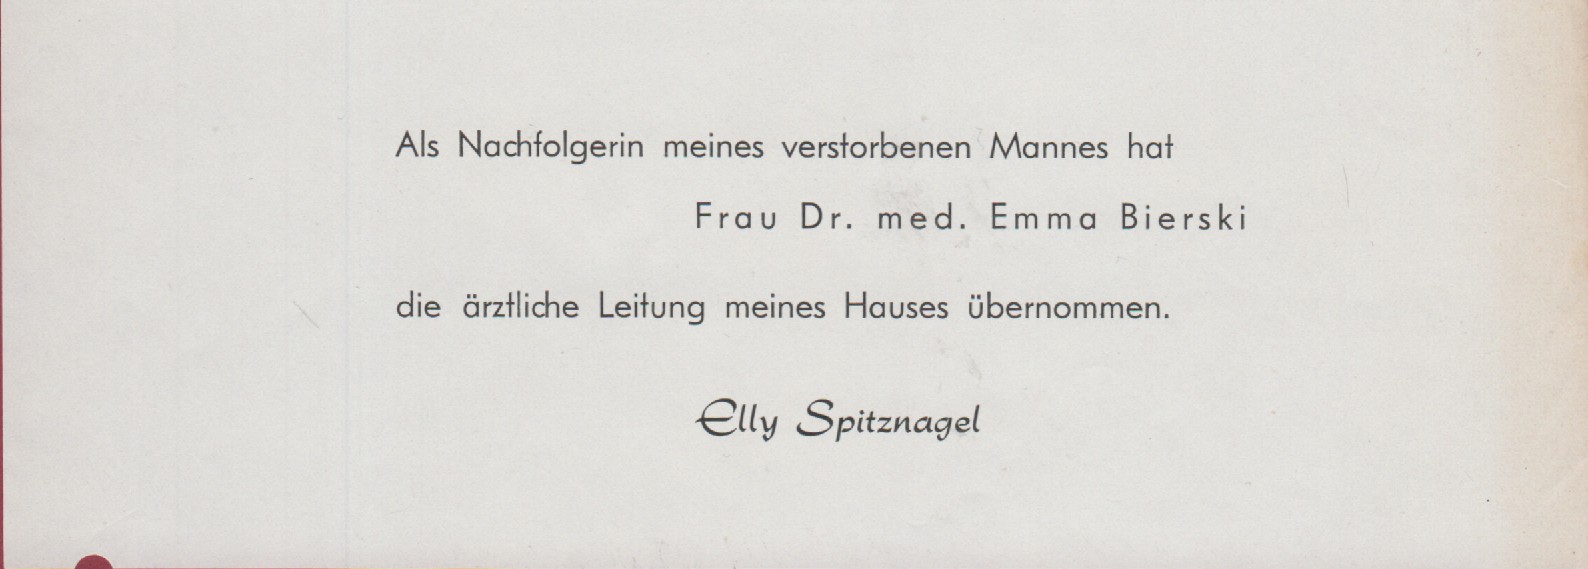 Mitteilung als Einleger im Flyer mit Ankündigung der neuen med. Leitung des Sanatorium Spitznagel (Heimatmuseum und -Archiv Bad Bodendorf CC BY-NC-SA)